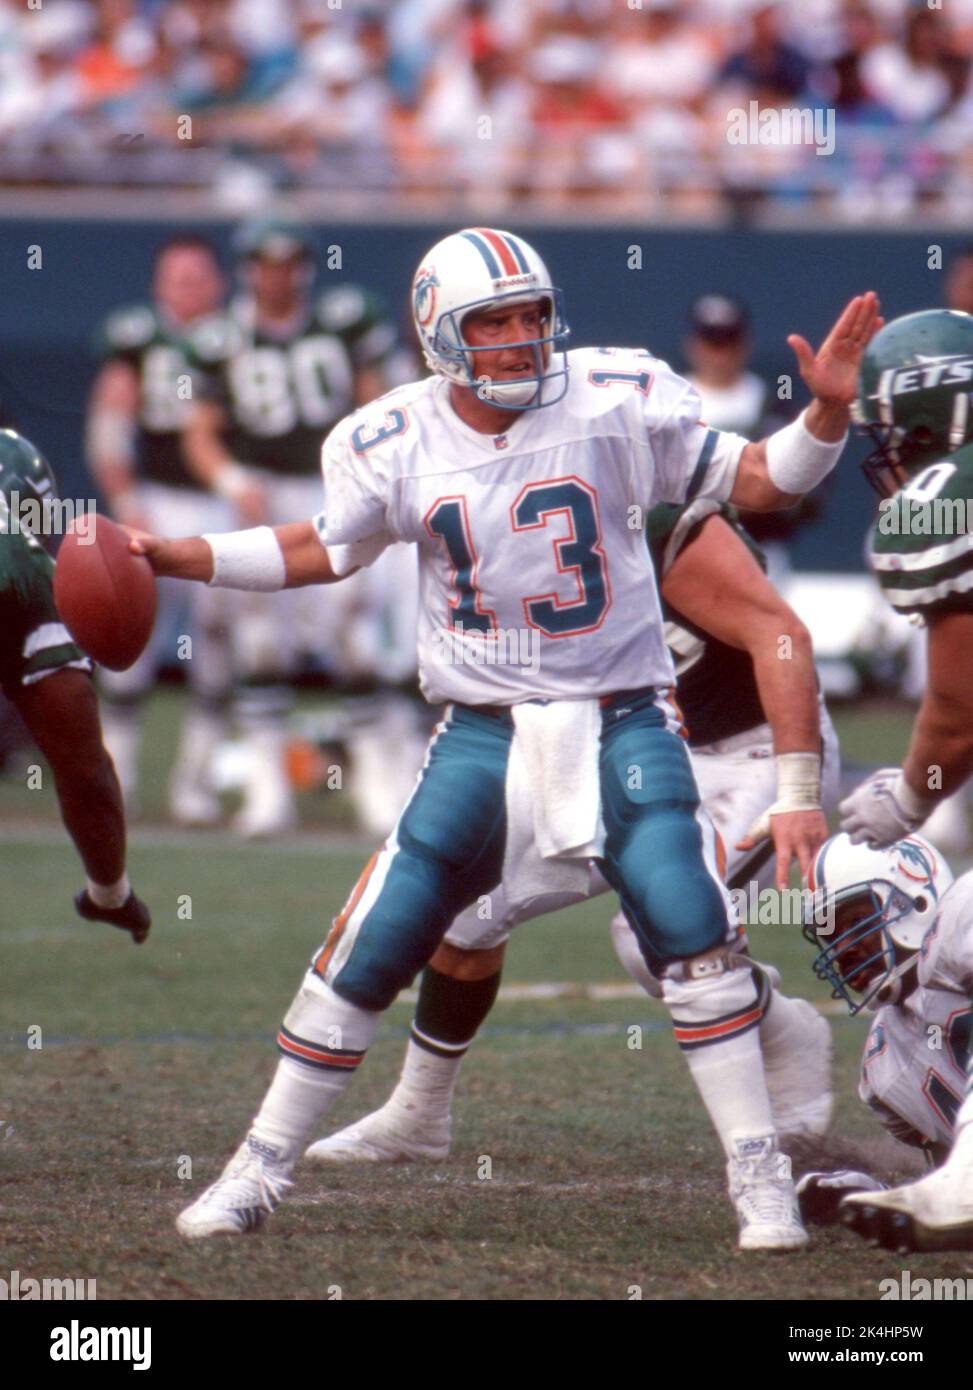 Il quarterback dei Miami Dolphins fu mostrato in una gara contro i New York Jets durante una gara c. 1995. Foto Stock